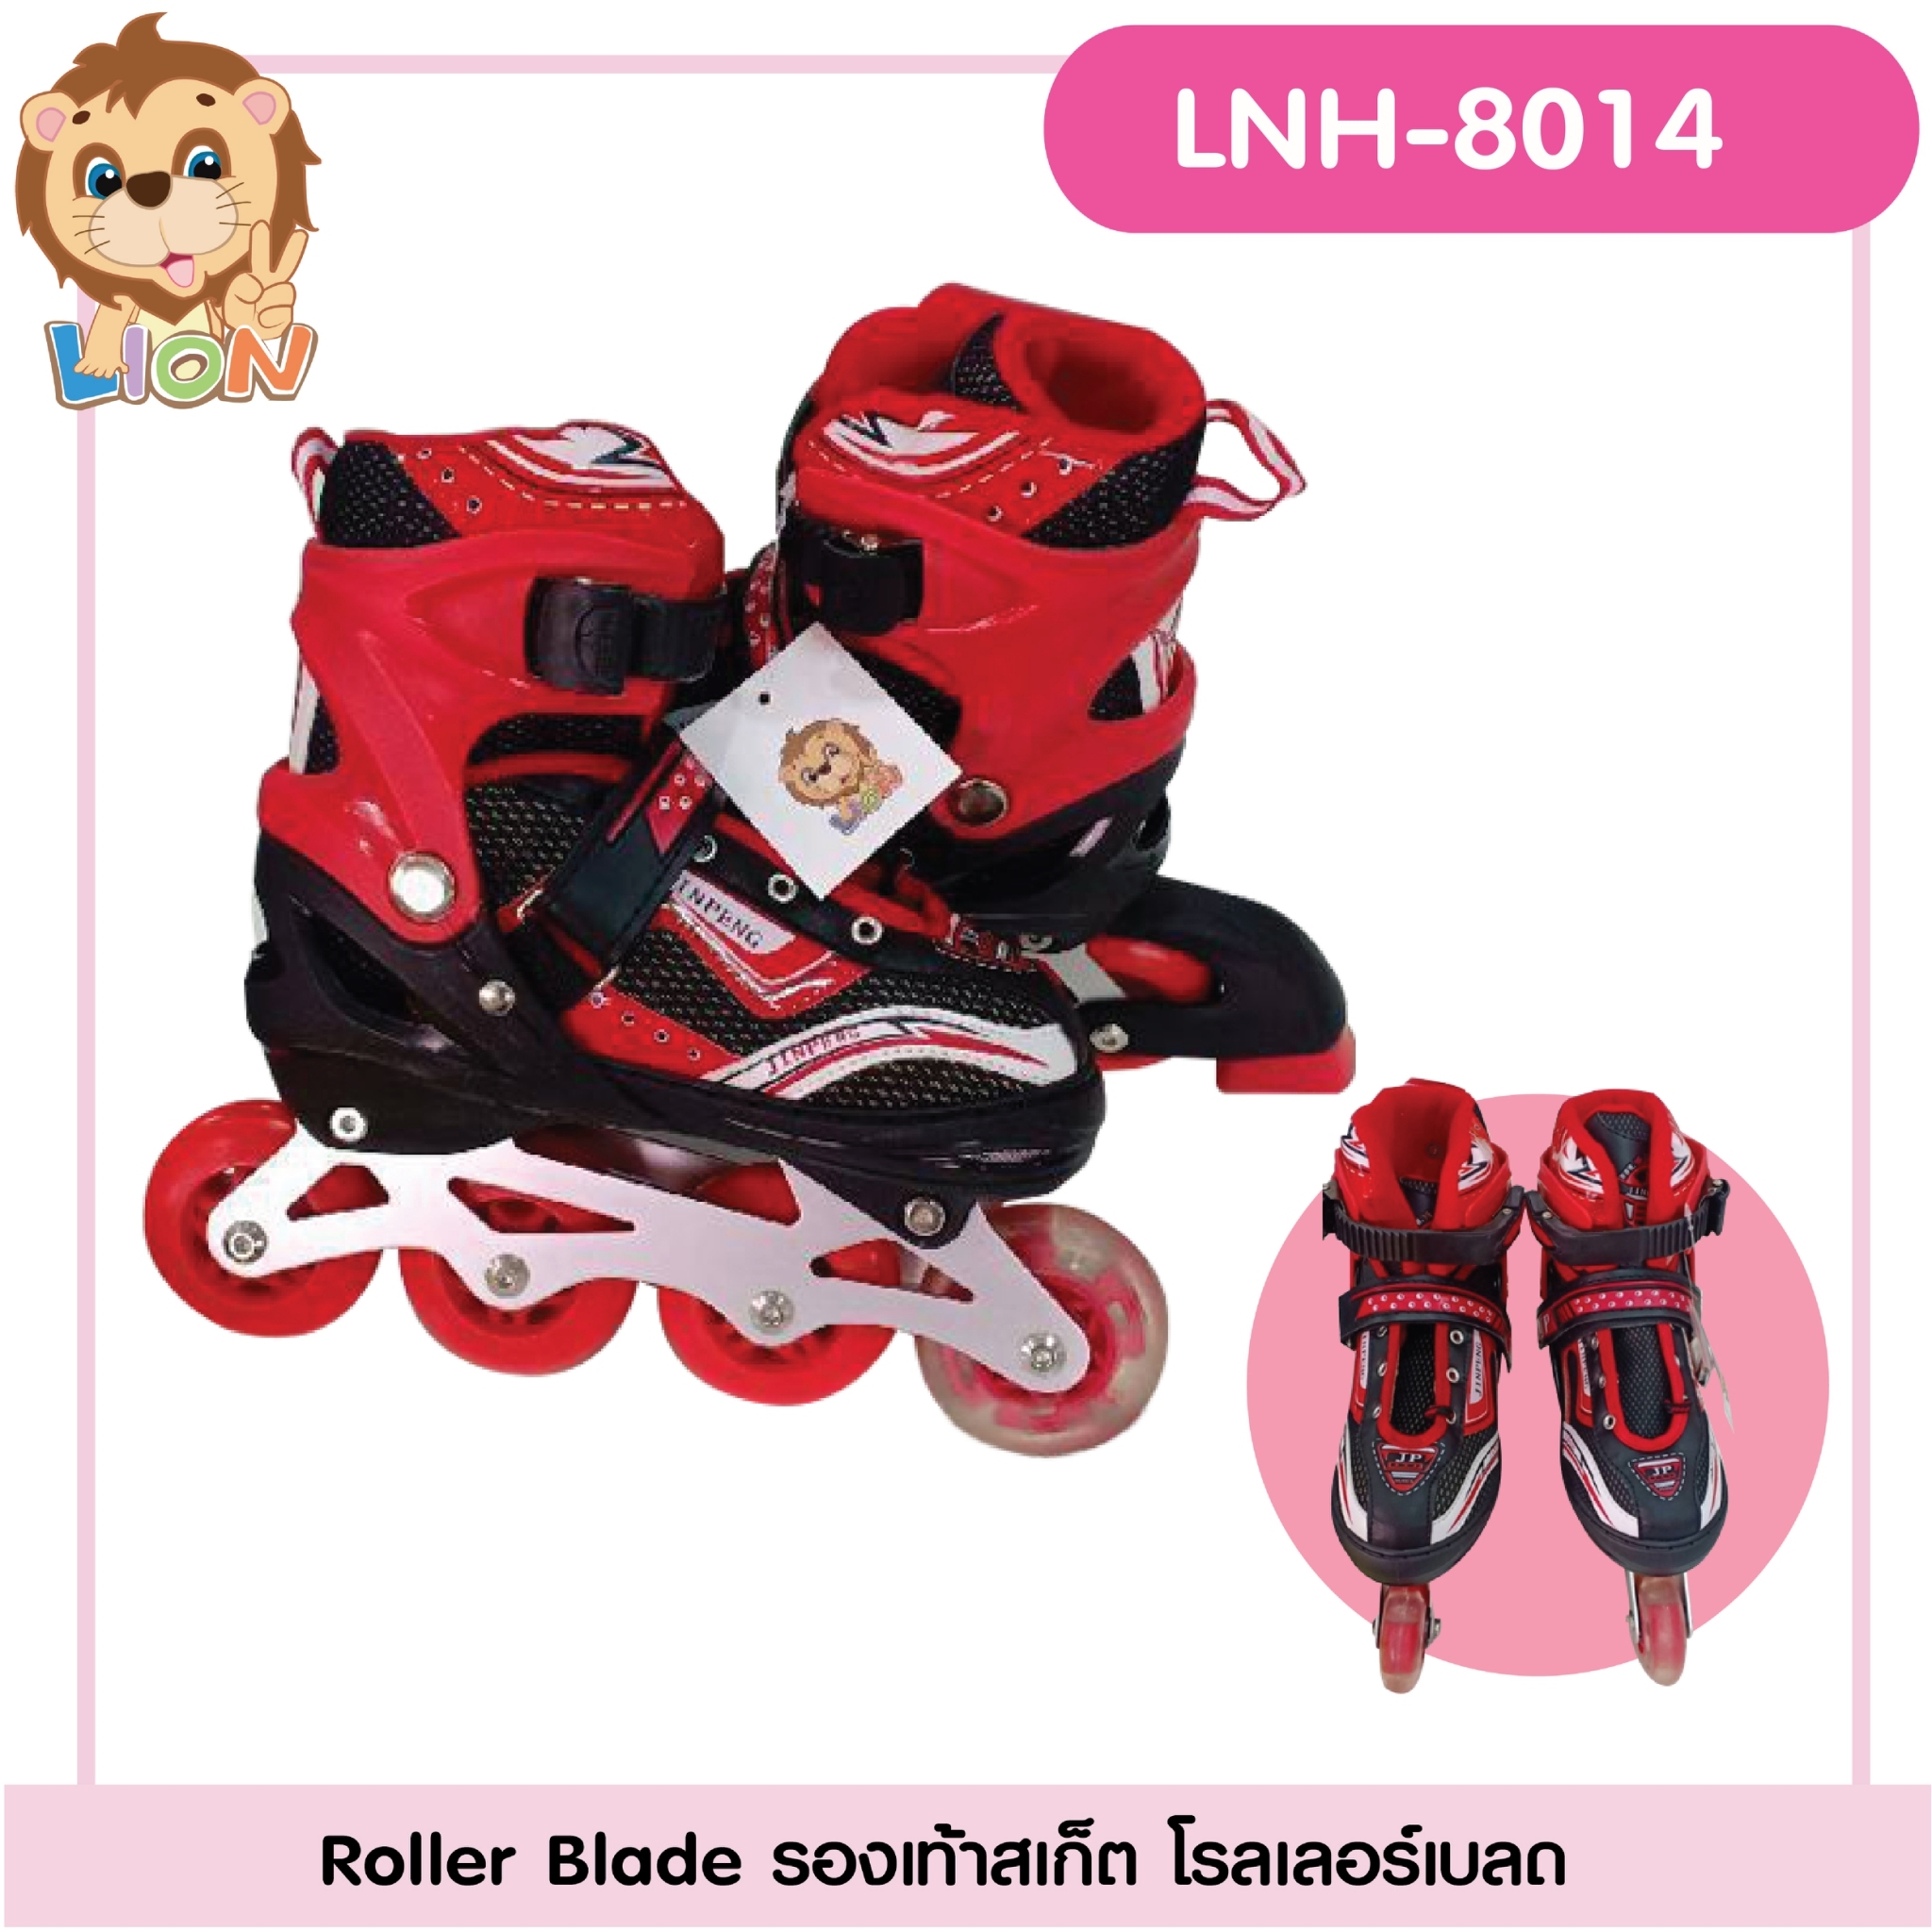 รองเท้าสเก็ต รองเท้า Roller Blade แบรนด์ LION รุ่น LNH-8014